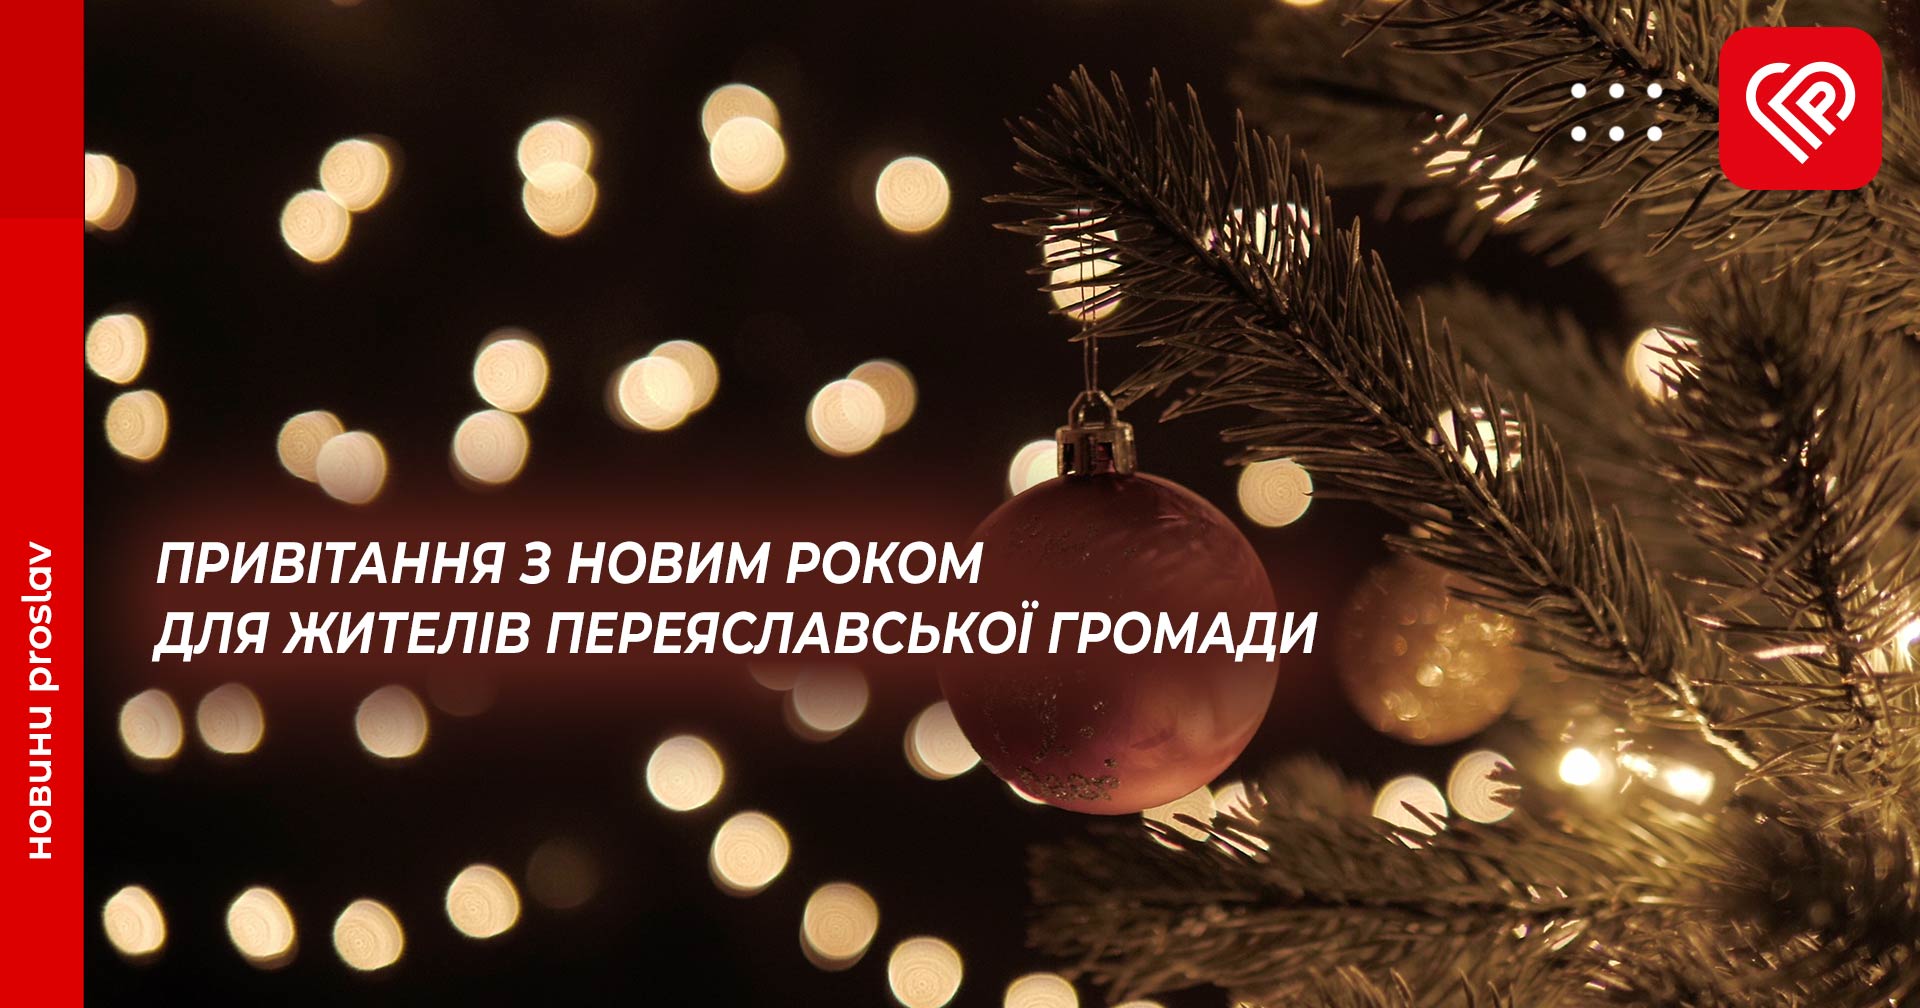 Привітання з Новим роком для жителів Переяславської громади